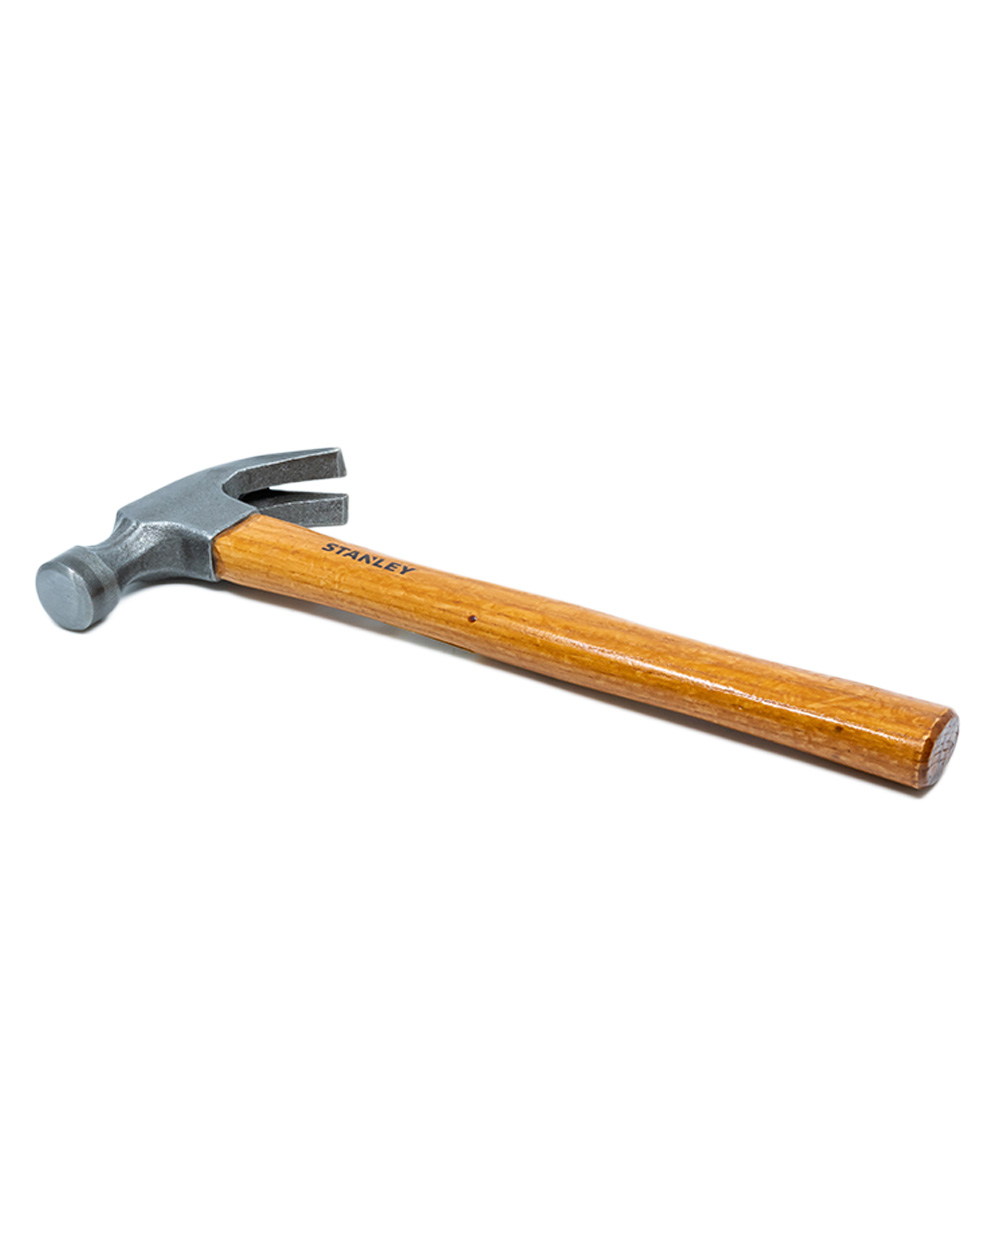 Stanley Wooden Claw Hammer 16Oz